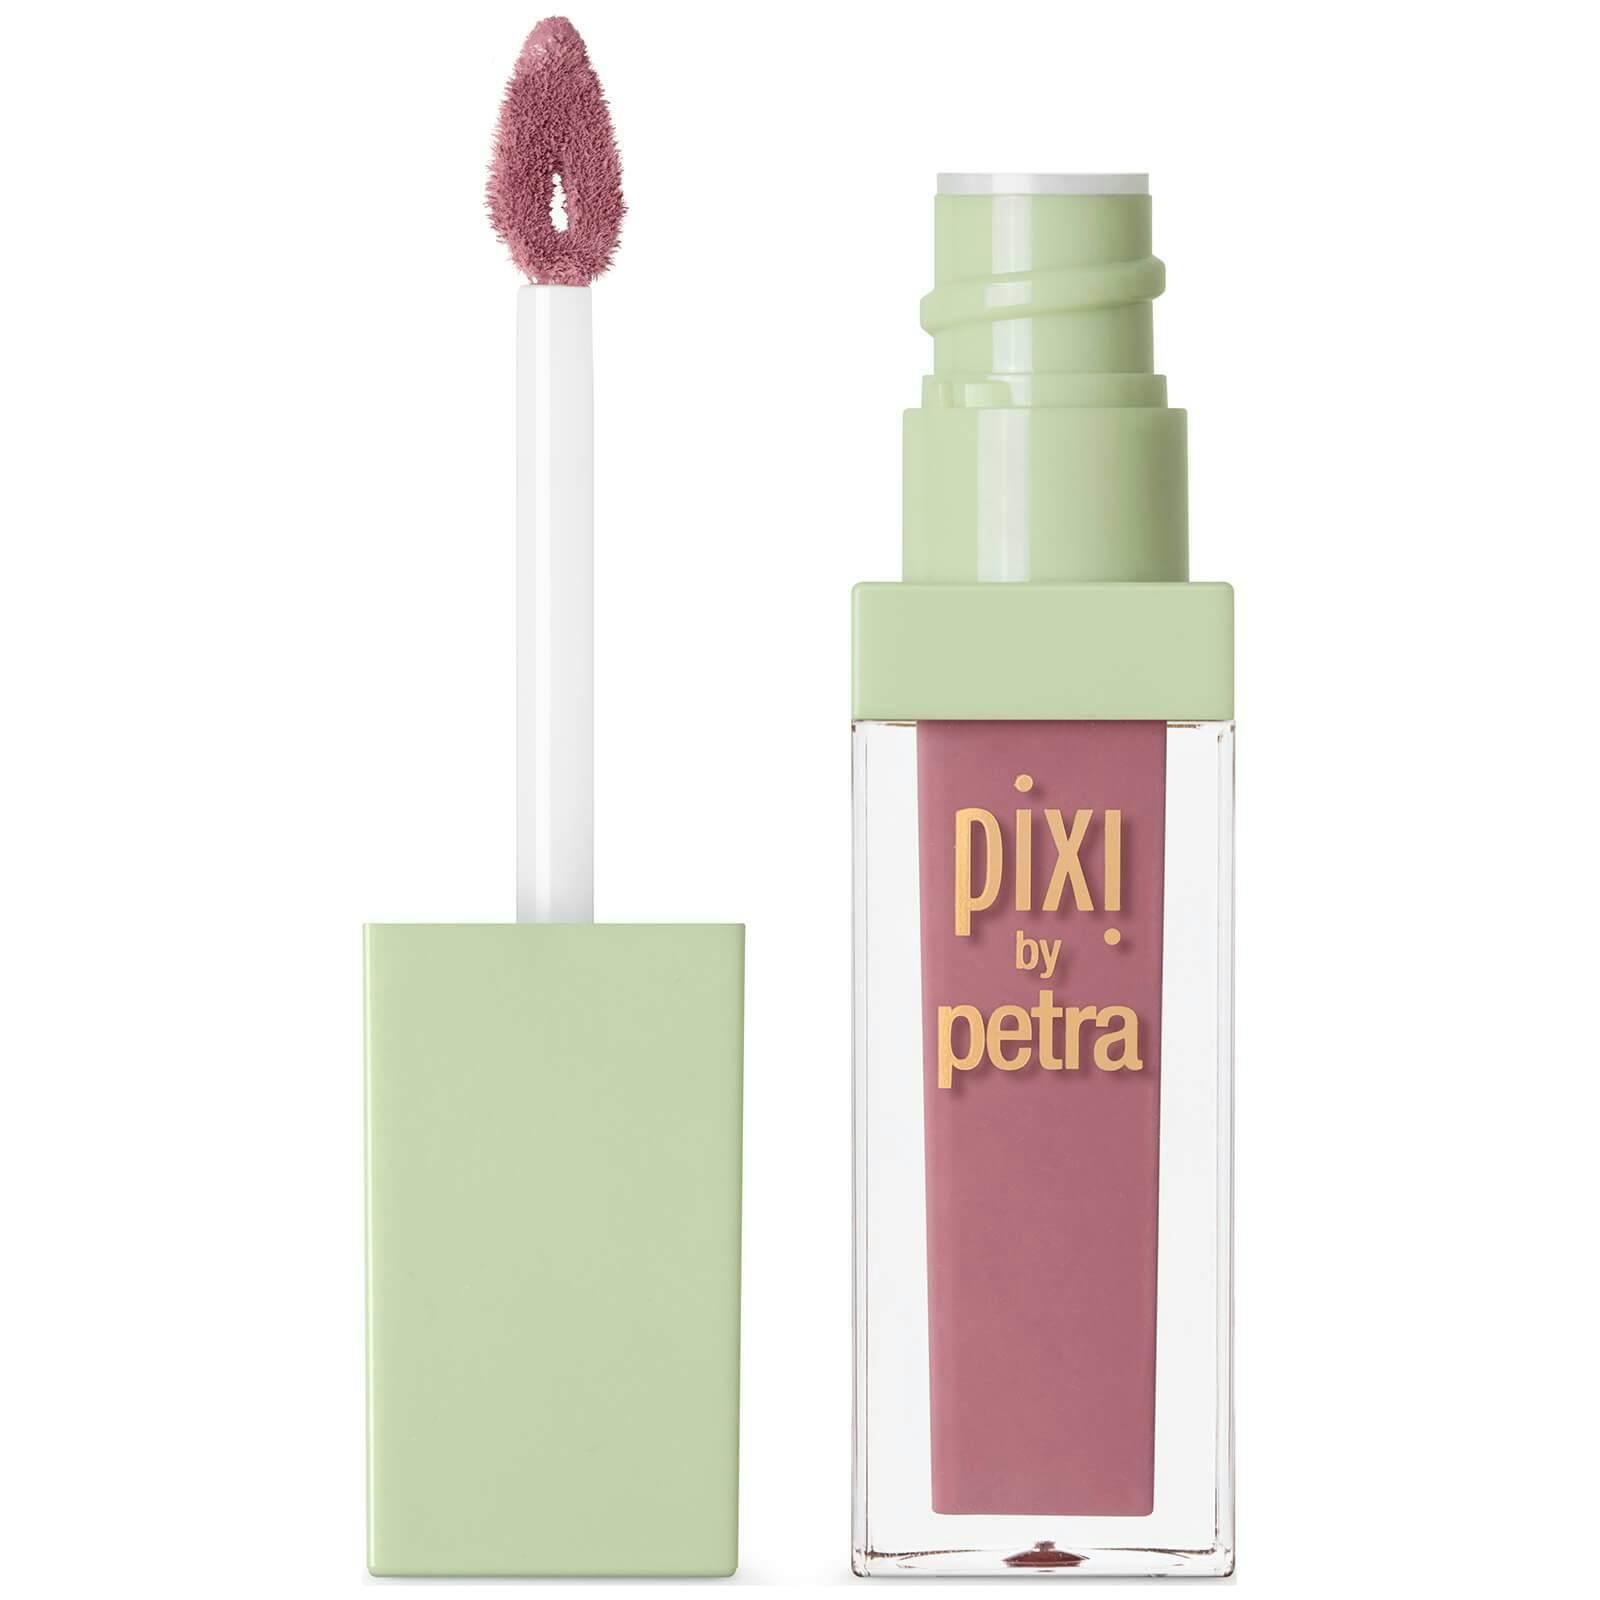 Pixi Matte Last Liquid Lipstick